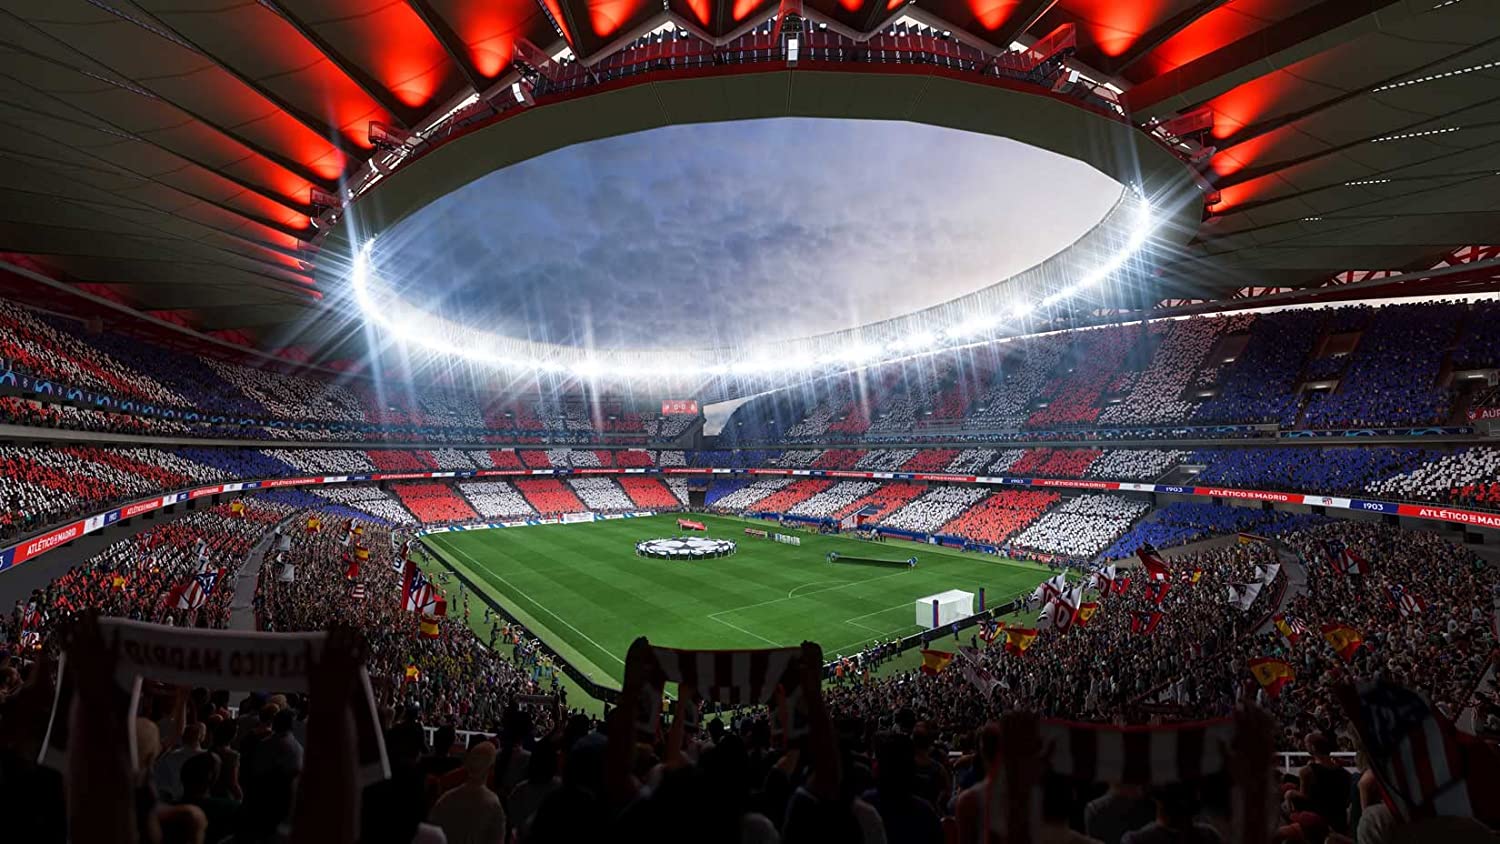 FIFA 23: Parco dei Principi, PSG stadium